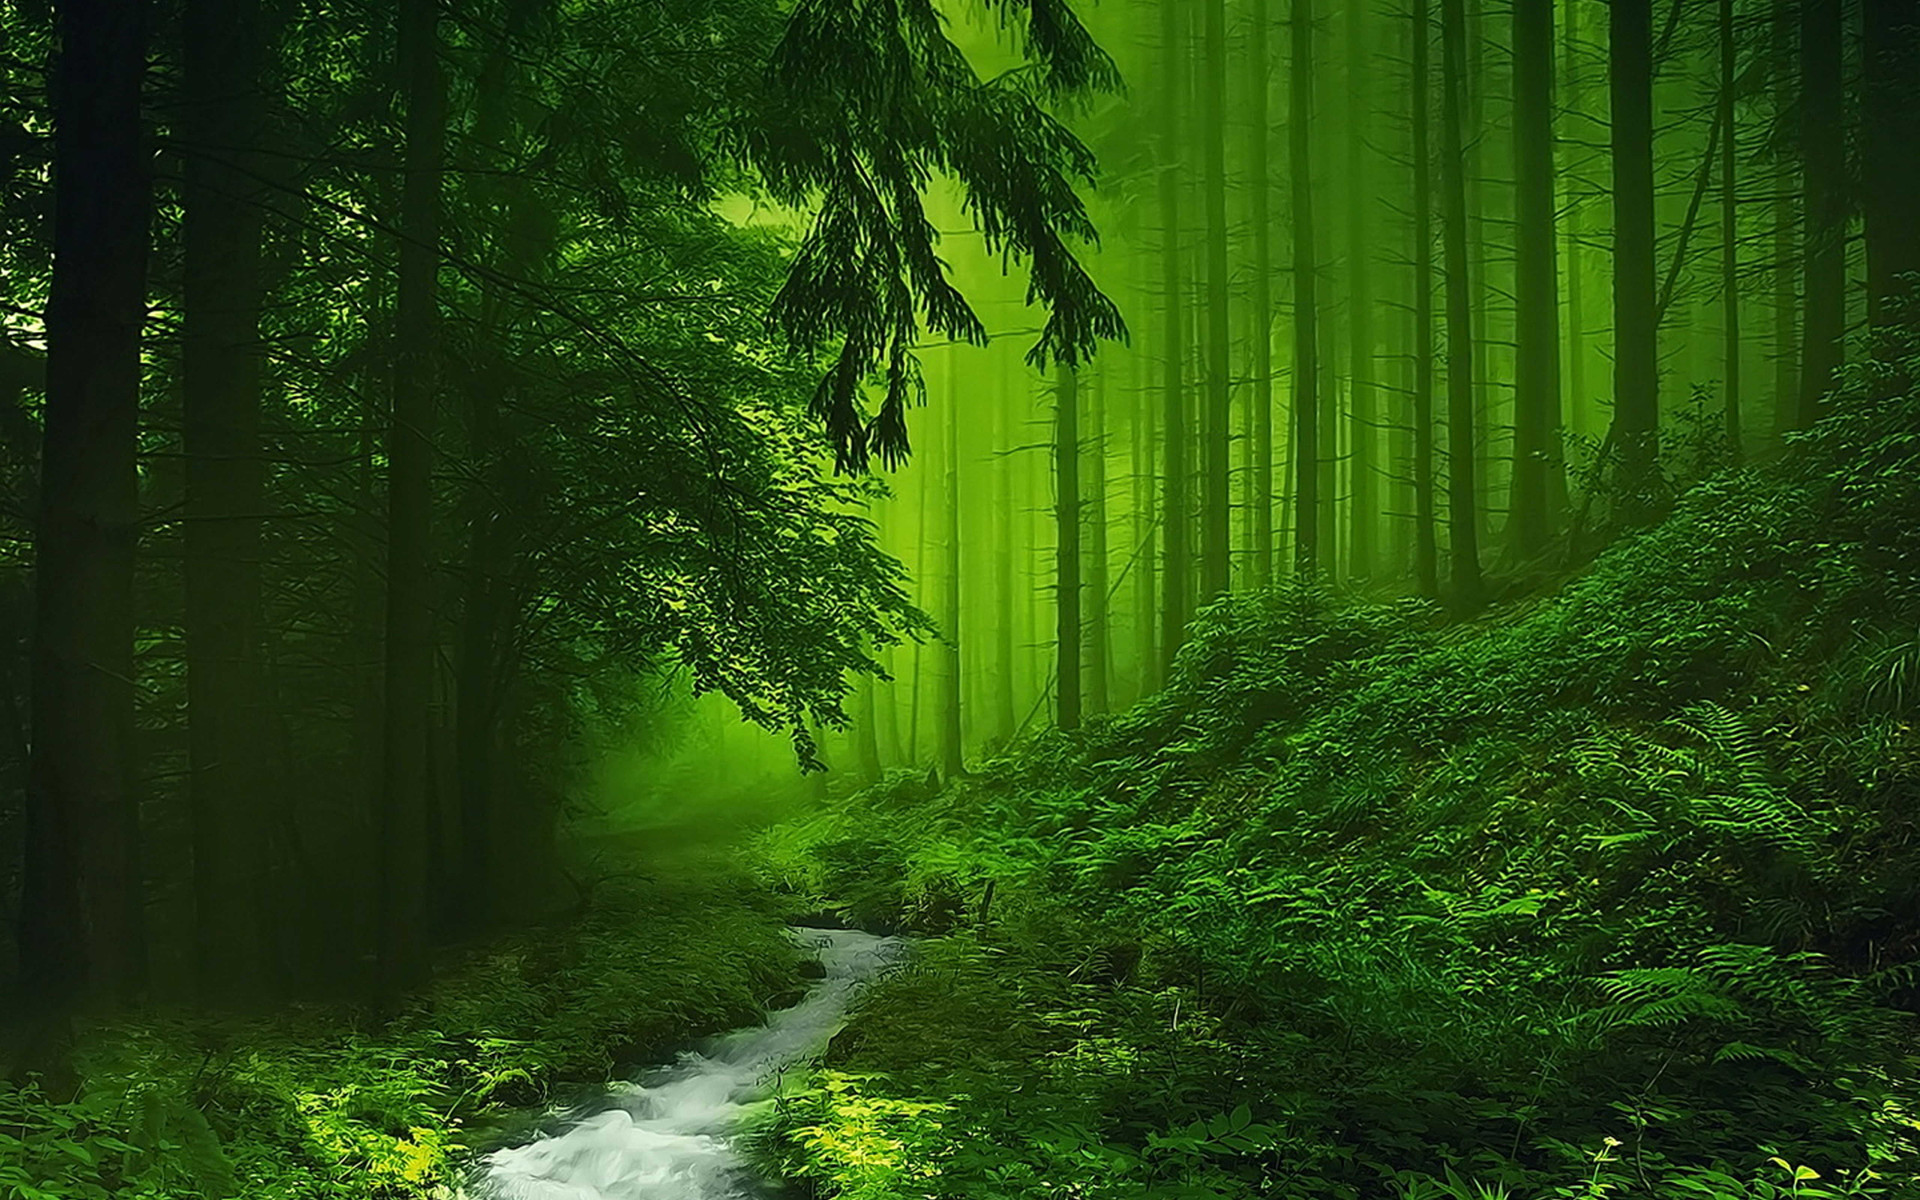 1920x1200 woods background image photo - 1